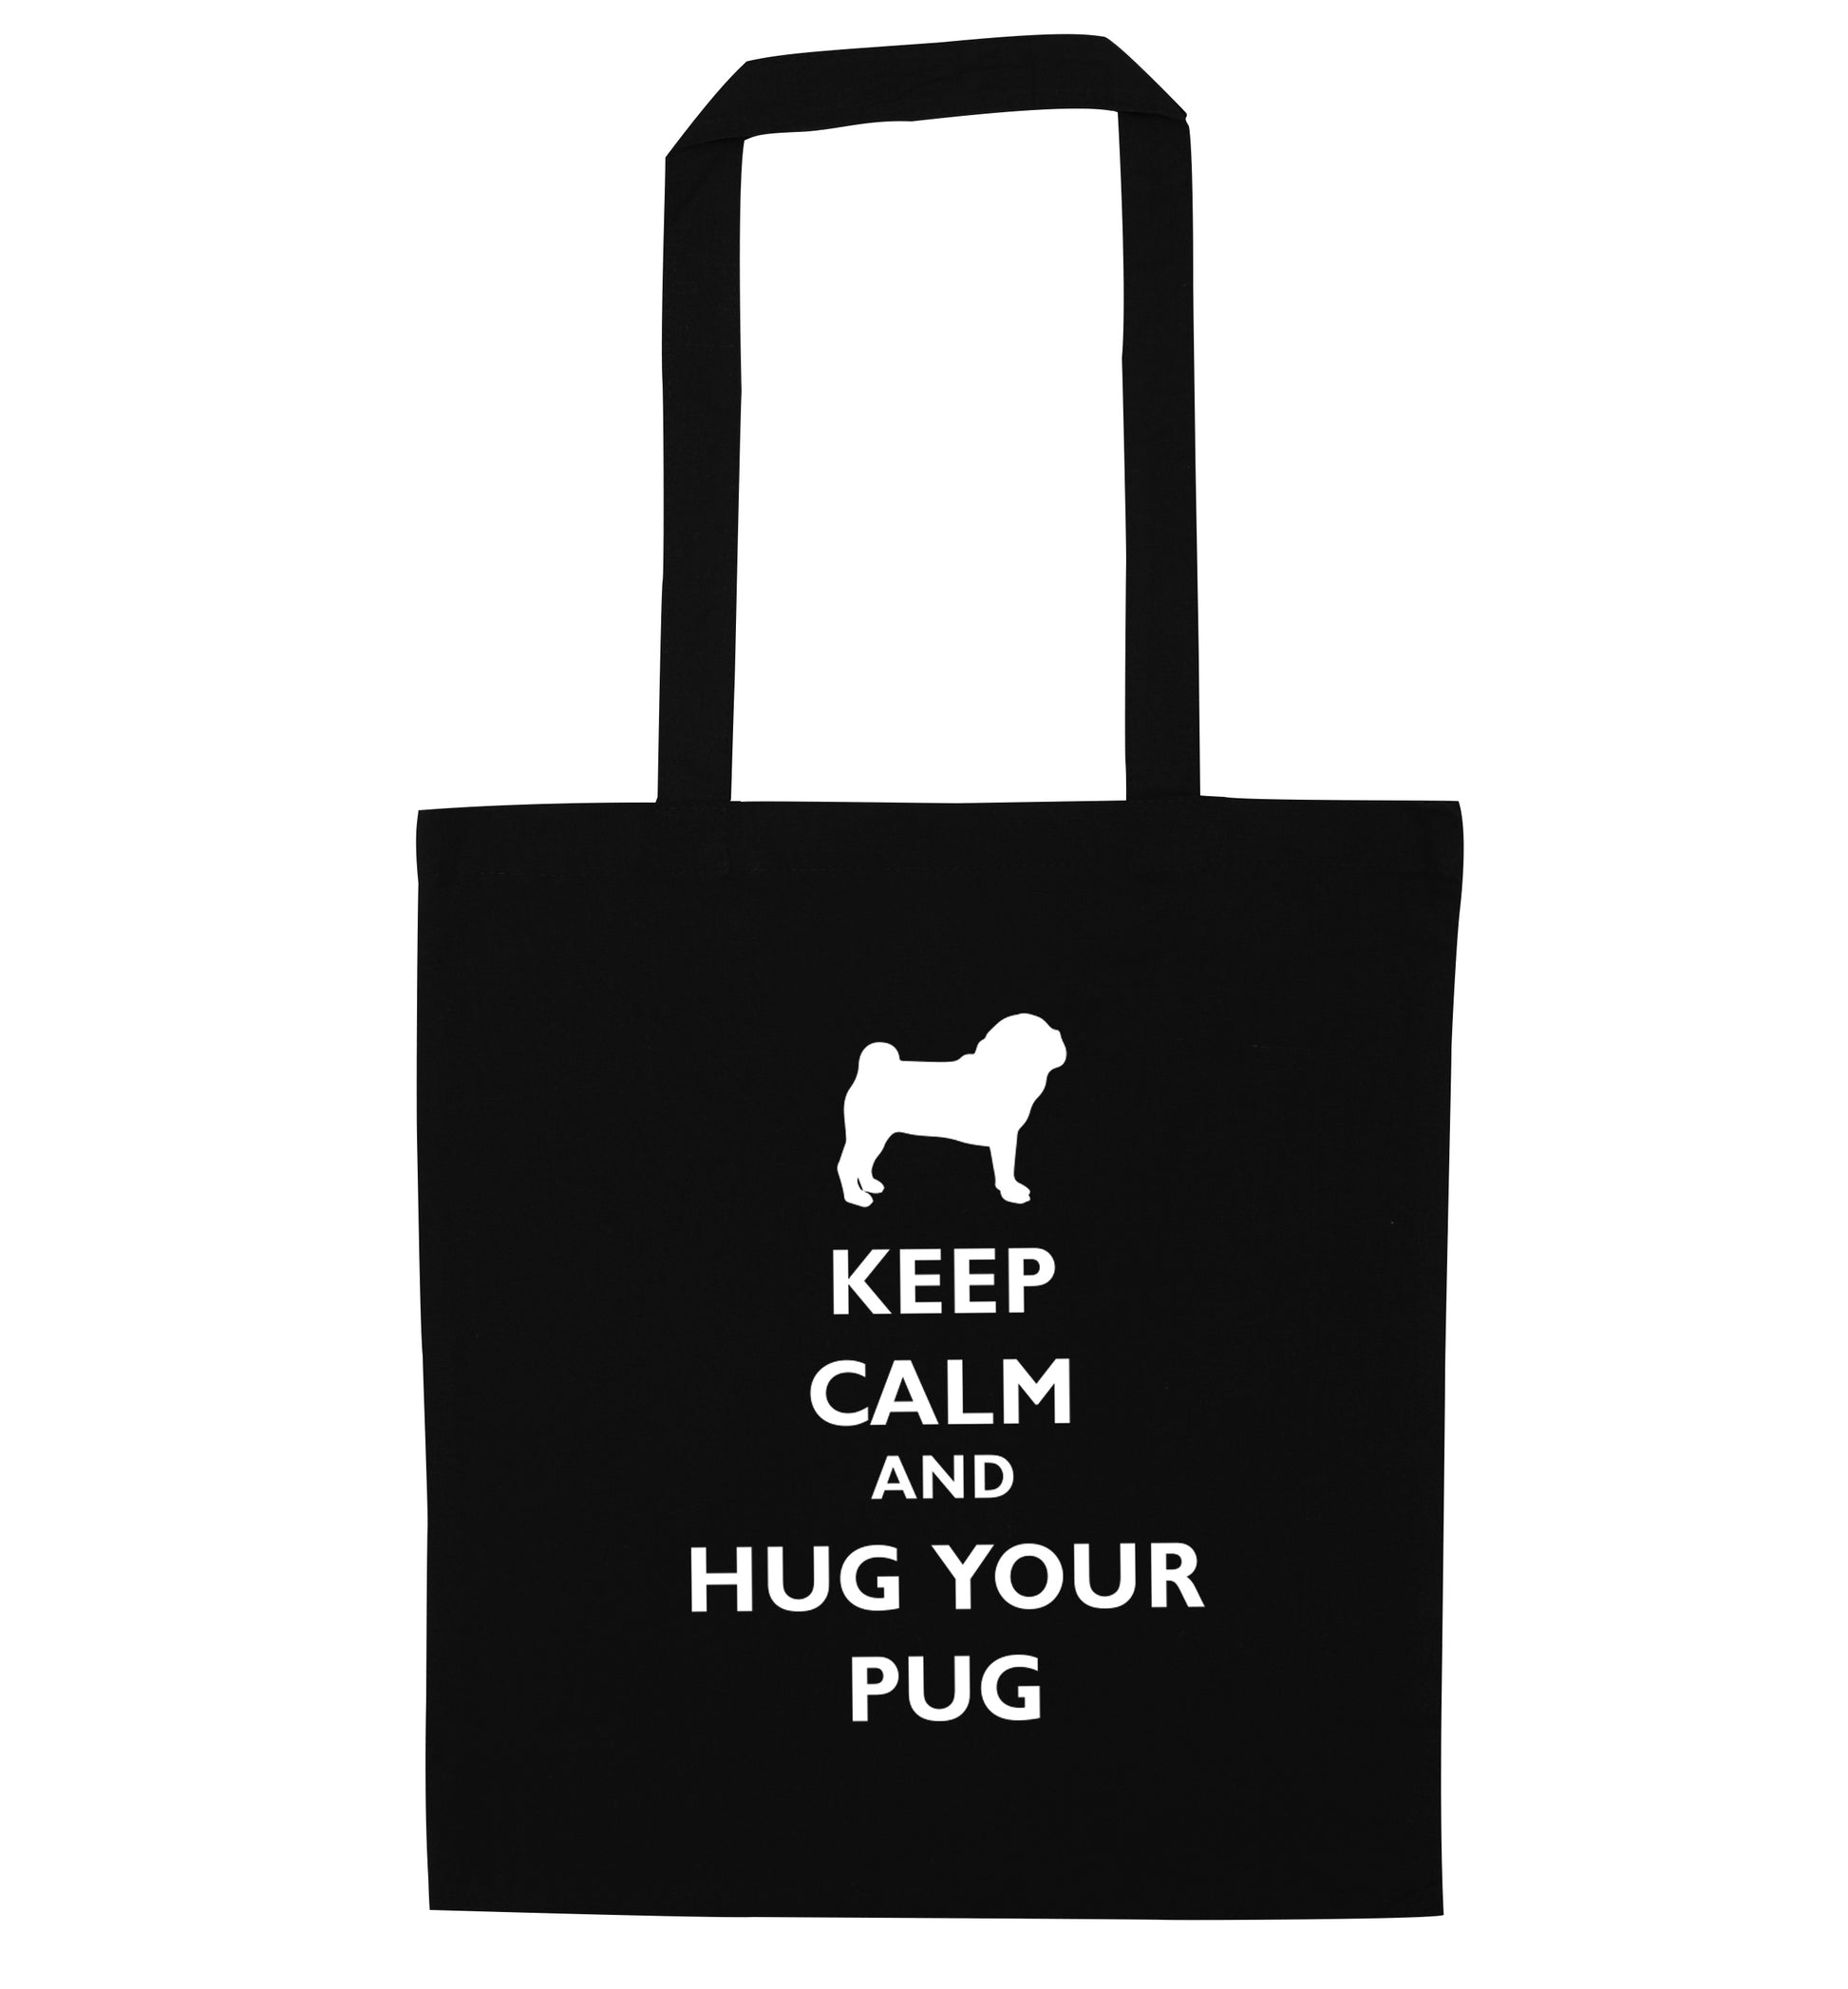 Keep calm and hug your pug black tote bag